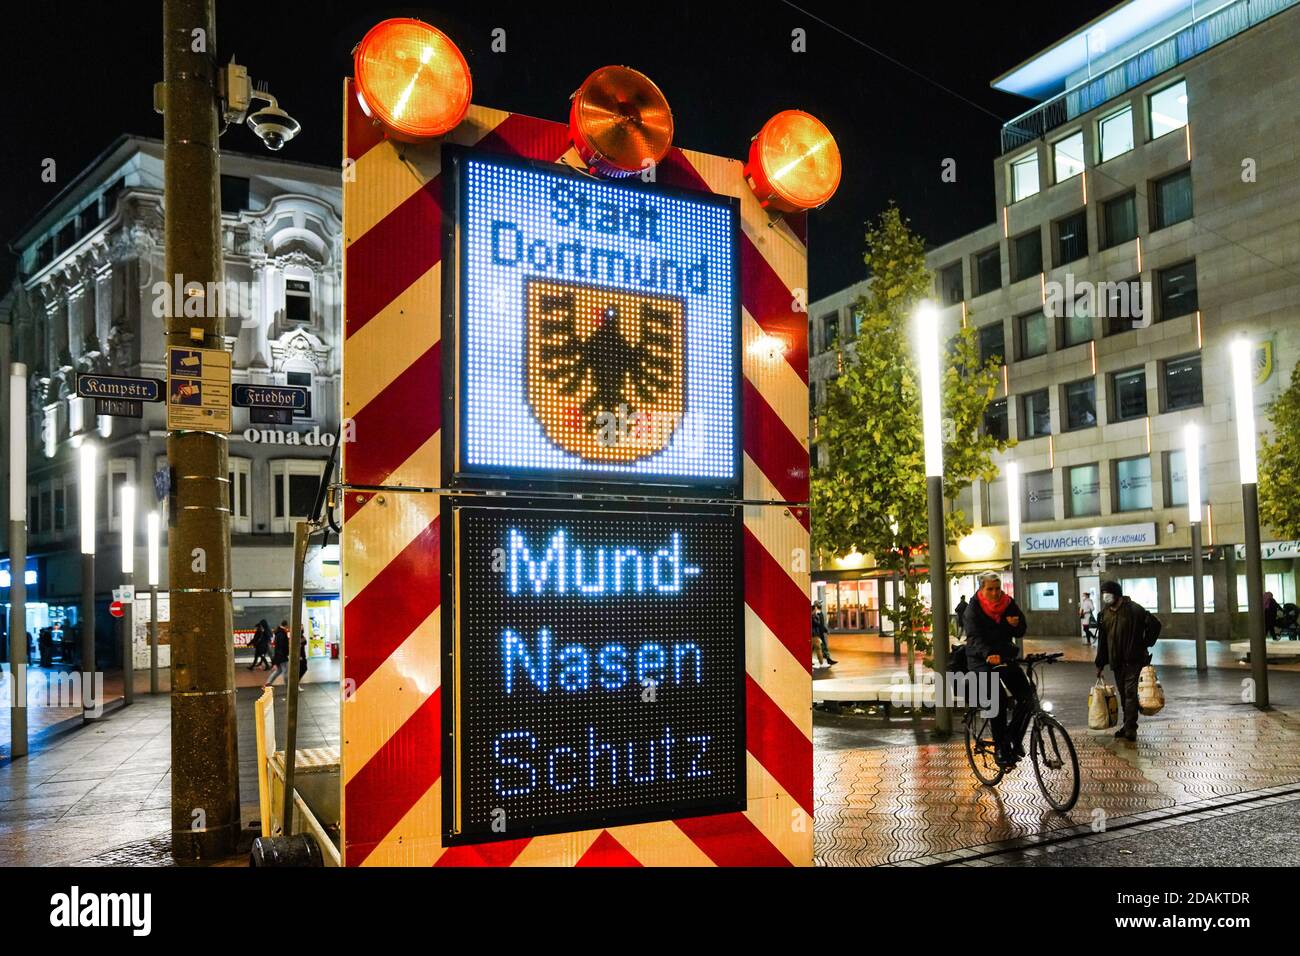 Dortmund, 13.11.2020: Blinkende Schilder ermahnen in der Dortmunder Innenstadt an die wegen der Corona-Pandemie von der Stadt Dortmund angeordnete Maskenpflicht. Stock Photo